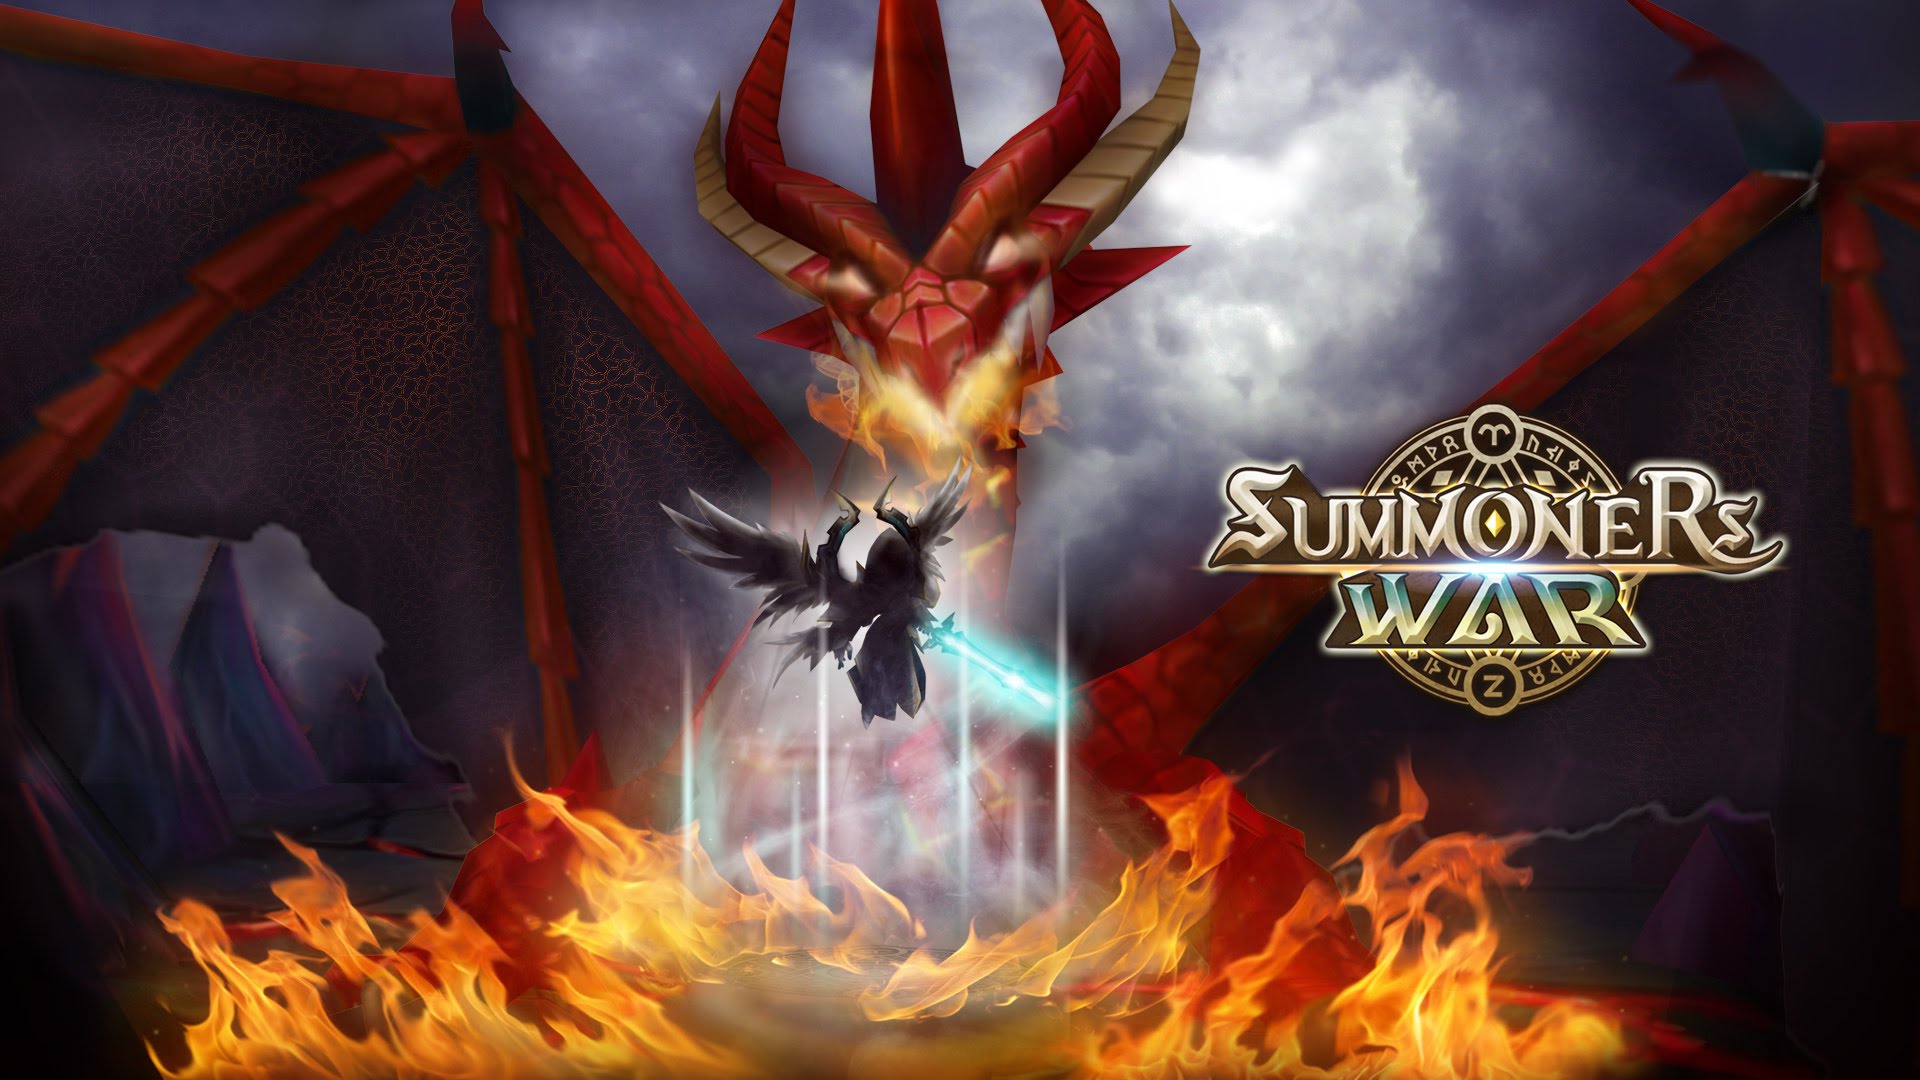 Summoners War Sky Arena HD Wallpaper Background Image